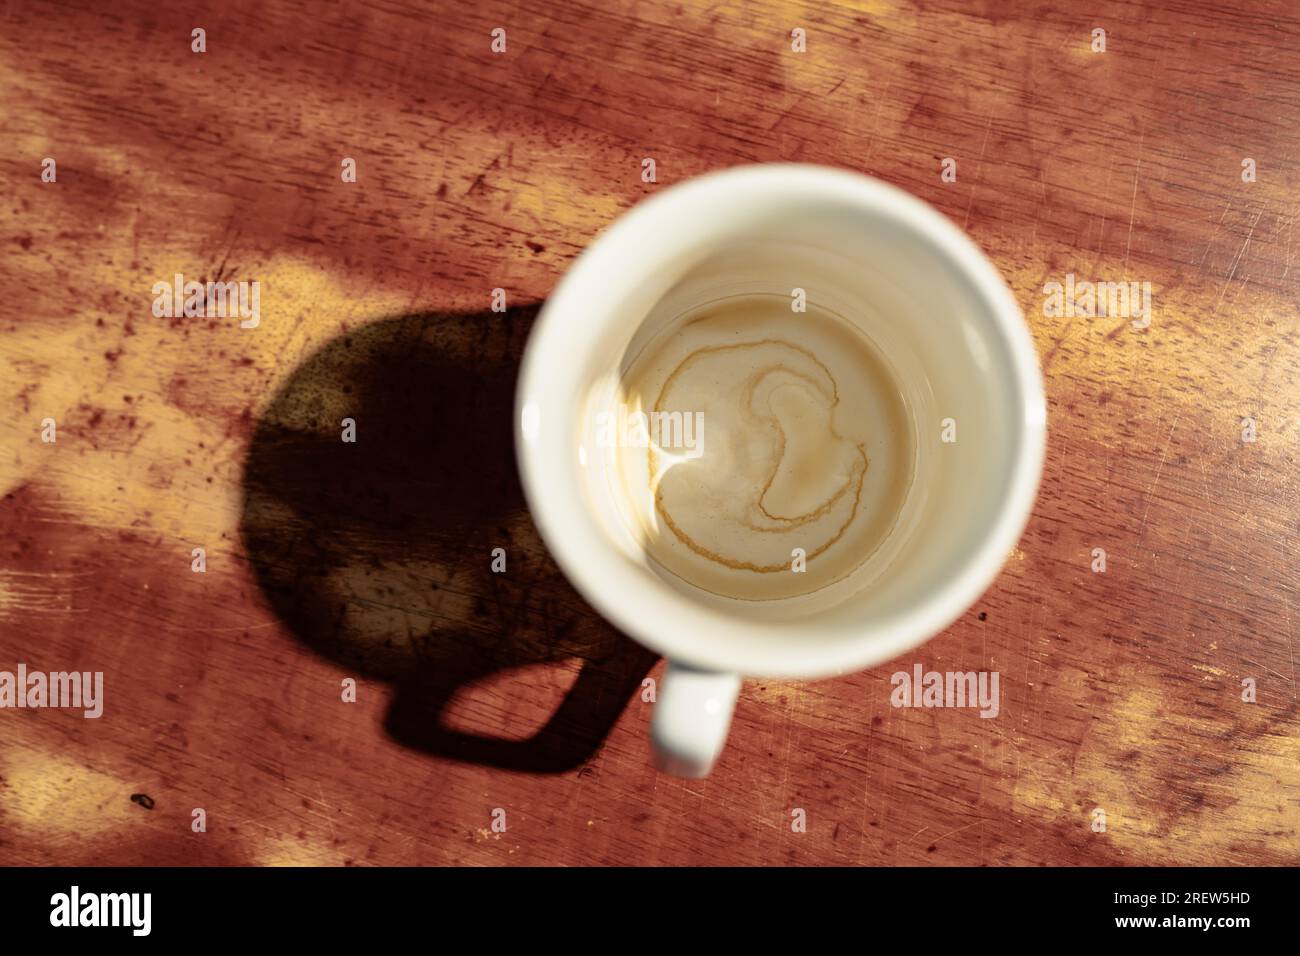 Der Kaffee hinterlässt schmutzige Flecken auf dem Boden einer Tasse Stockfoto